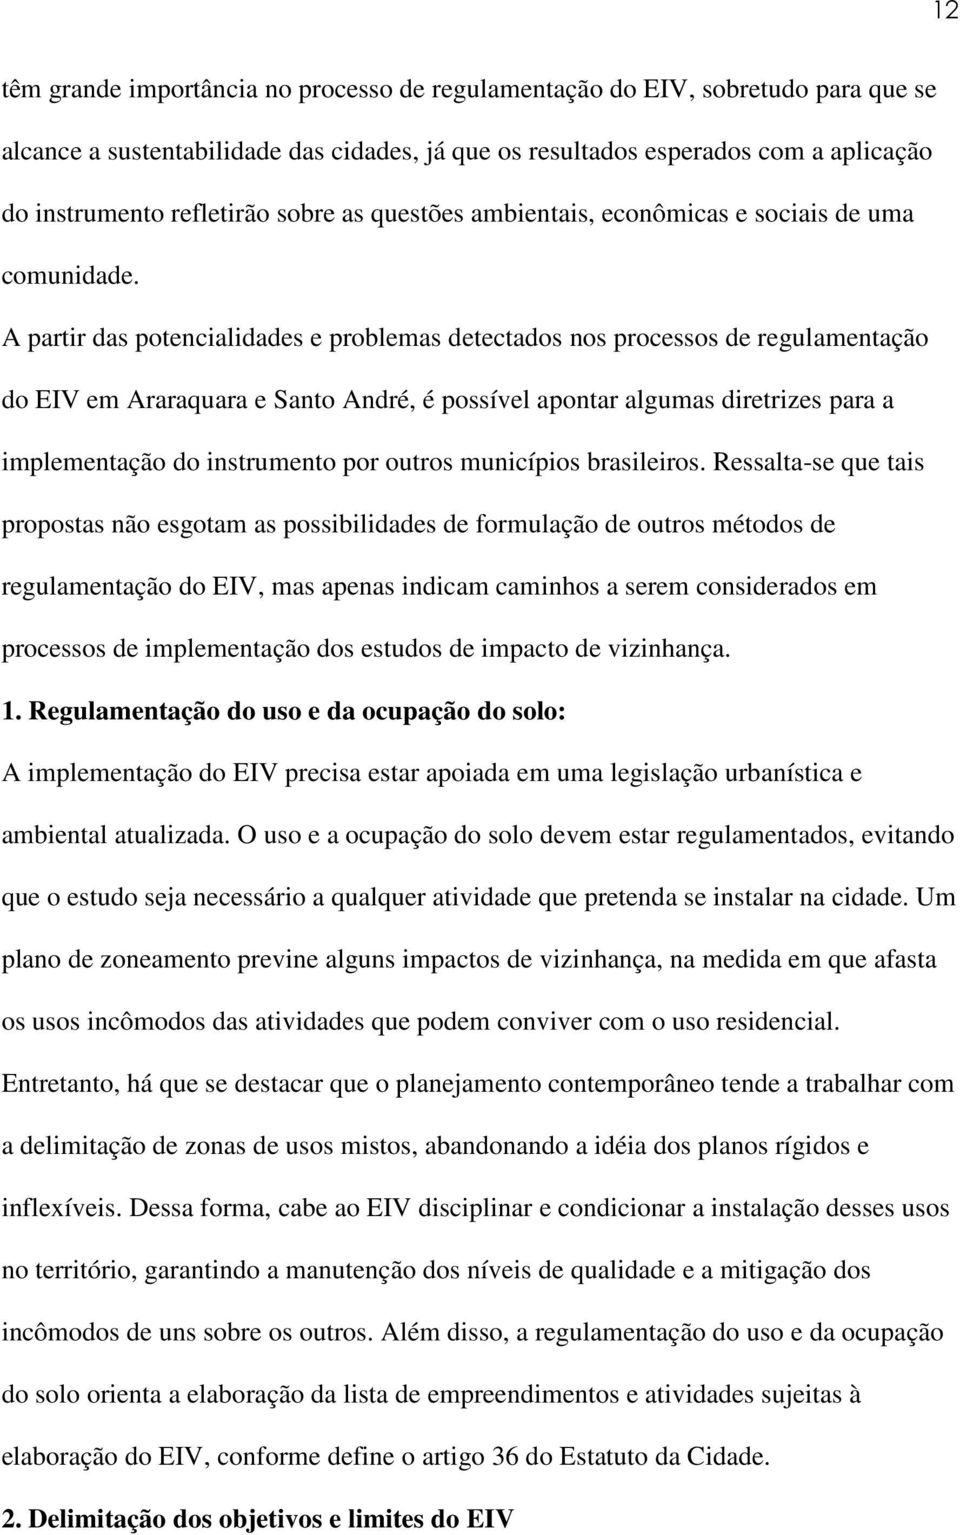 A partir das potencialidades e problemas detectados nos processos de regulamentação do EIV em Araraquara e Santo André, é possível apontar algumas diretrizes para a implementação do instrumento por